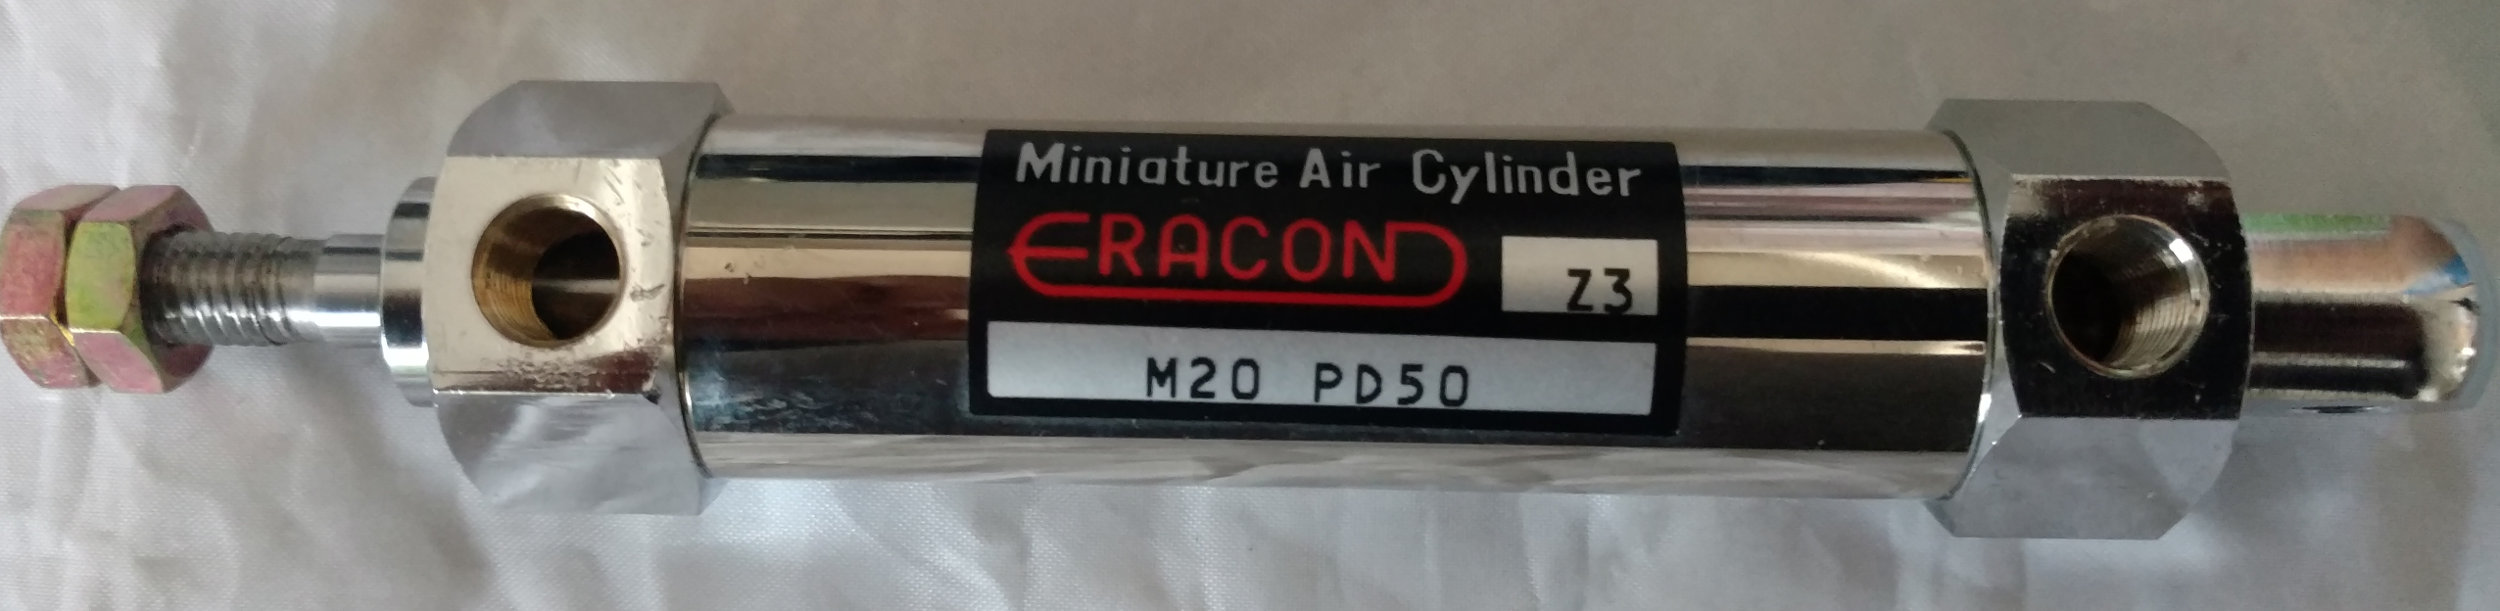 ERACOND M20 PD50 